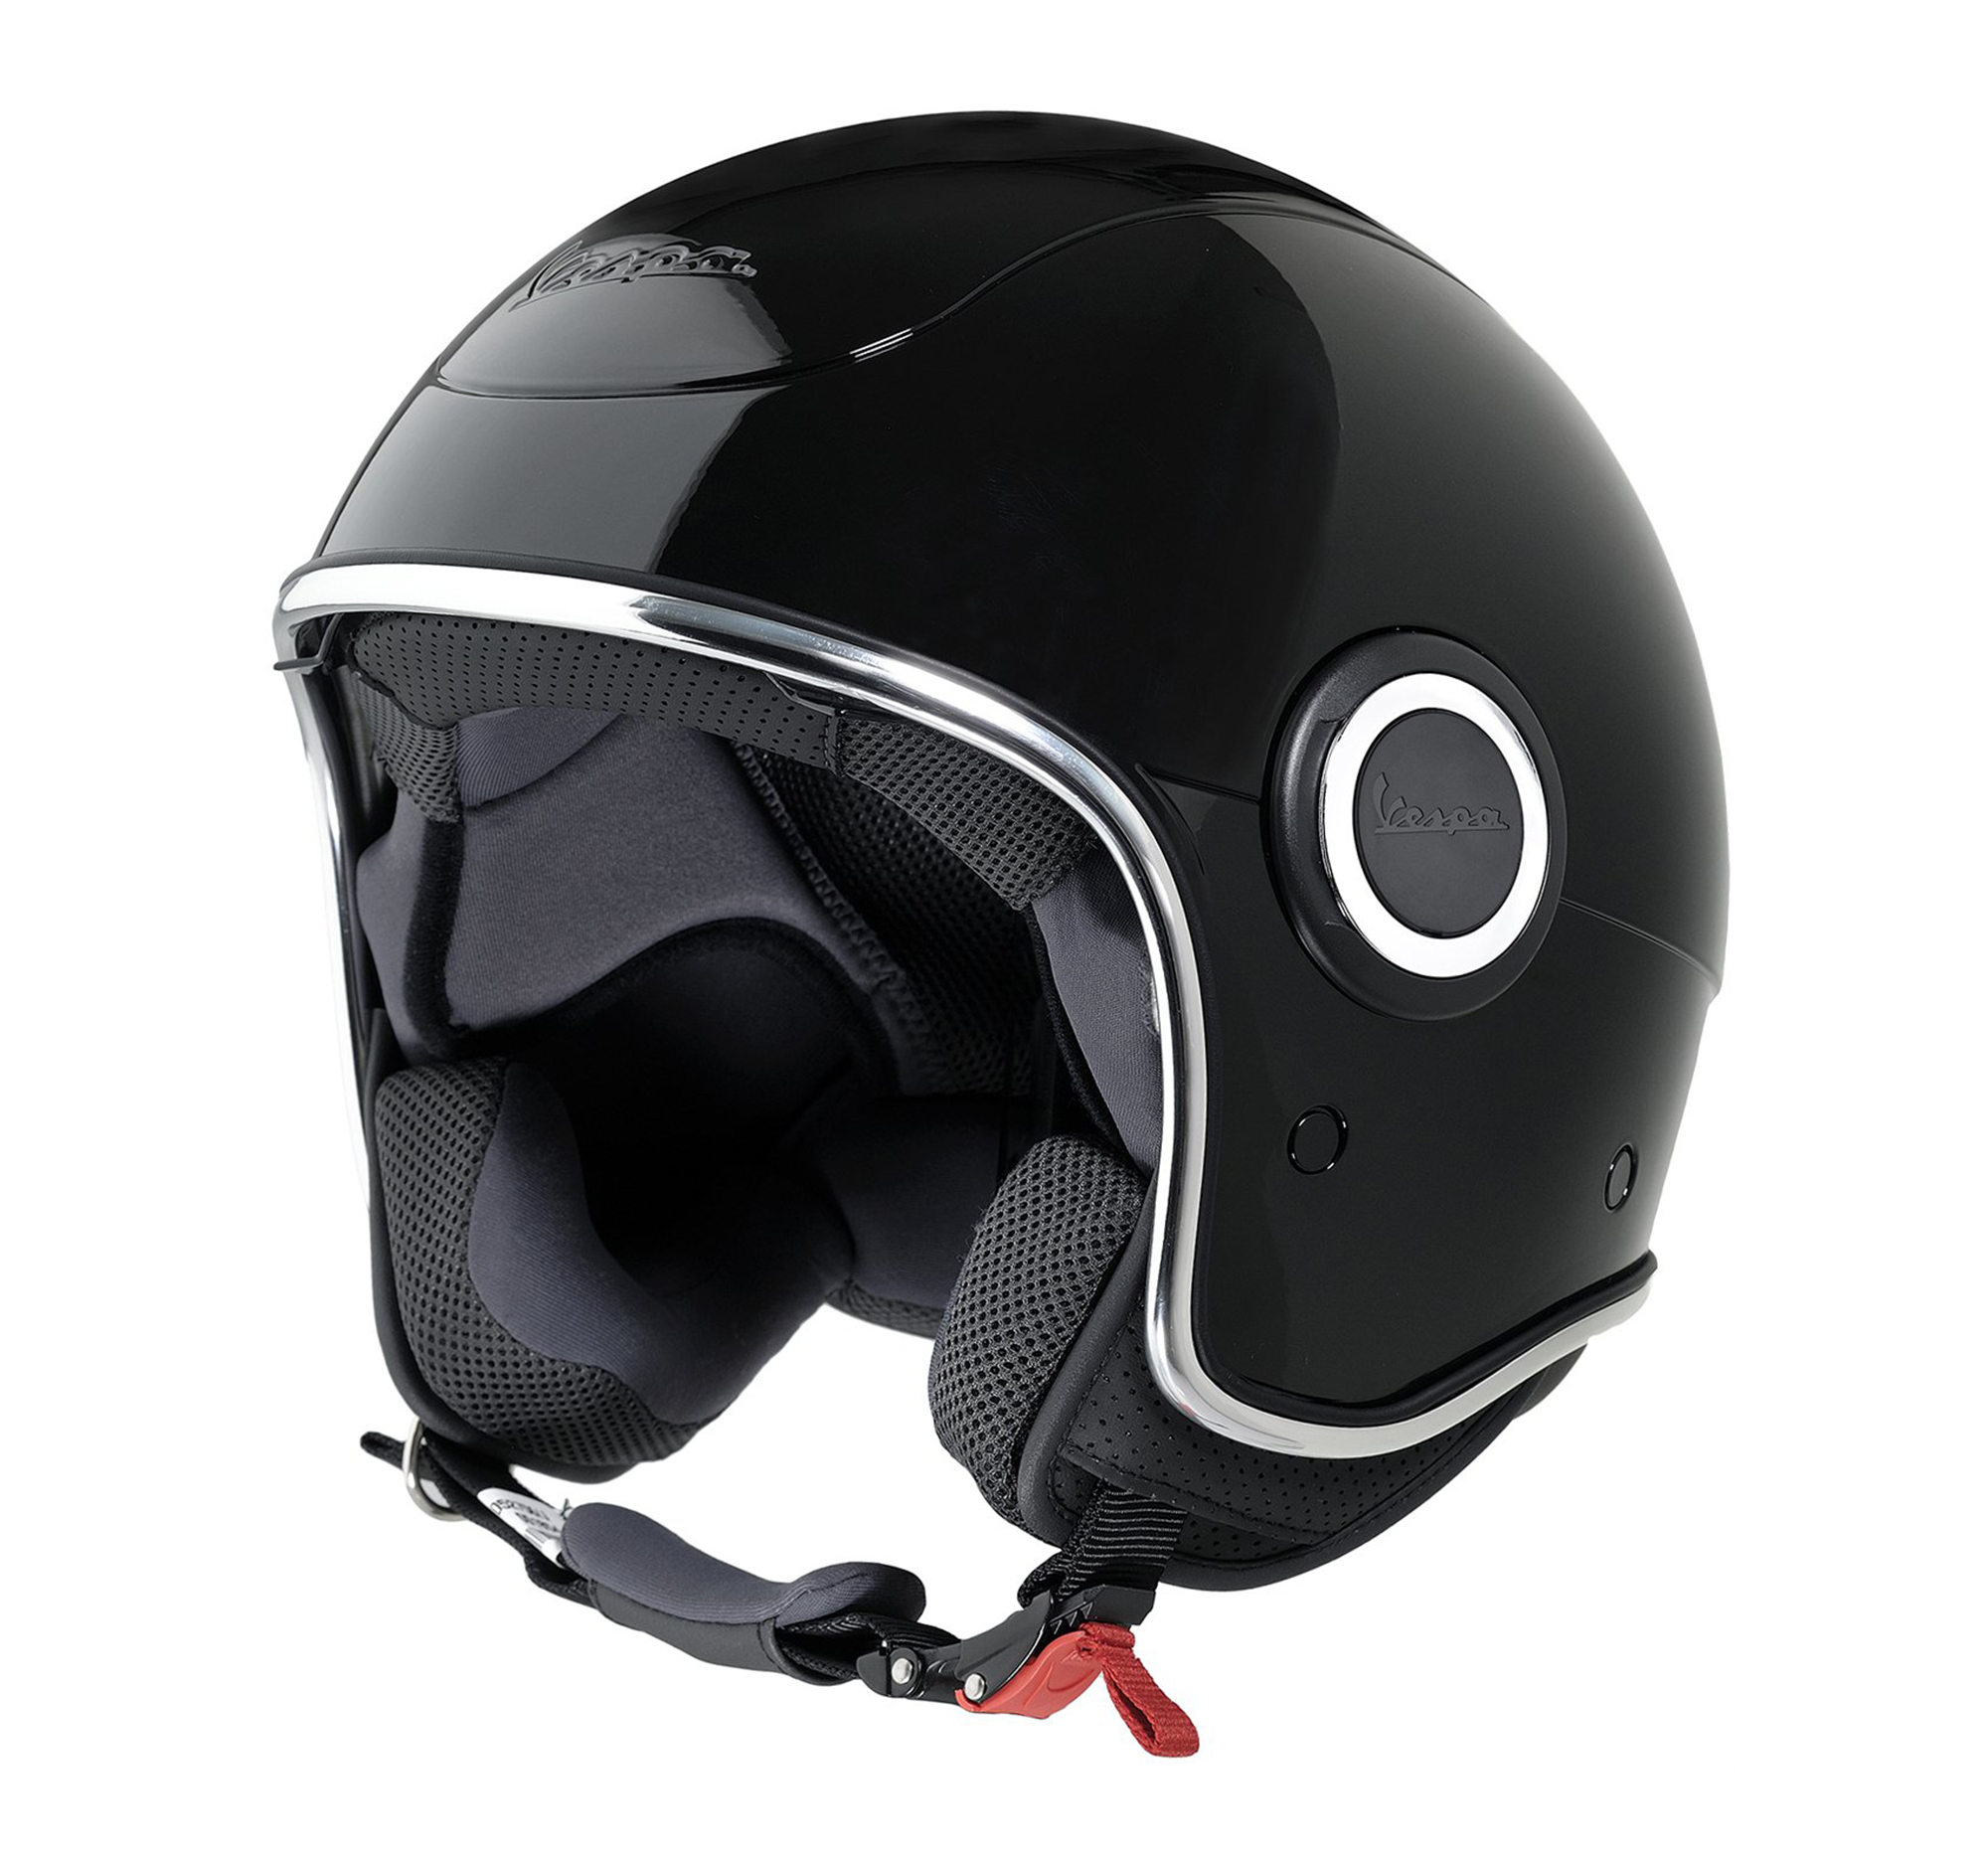 Besmettelijke ziekte Beschuldigingen Opheldering Vespa Jet Helm VJ1 zwart | Piaggio-Vespa Online Shop by RWN